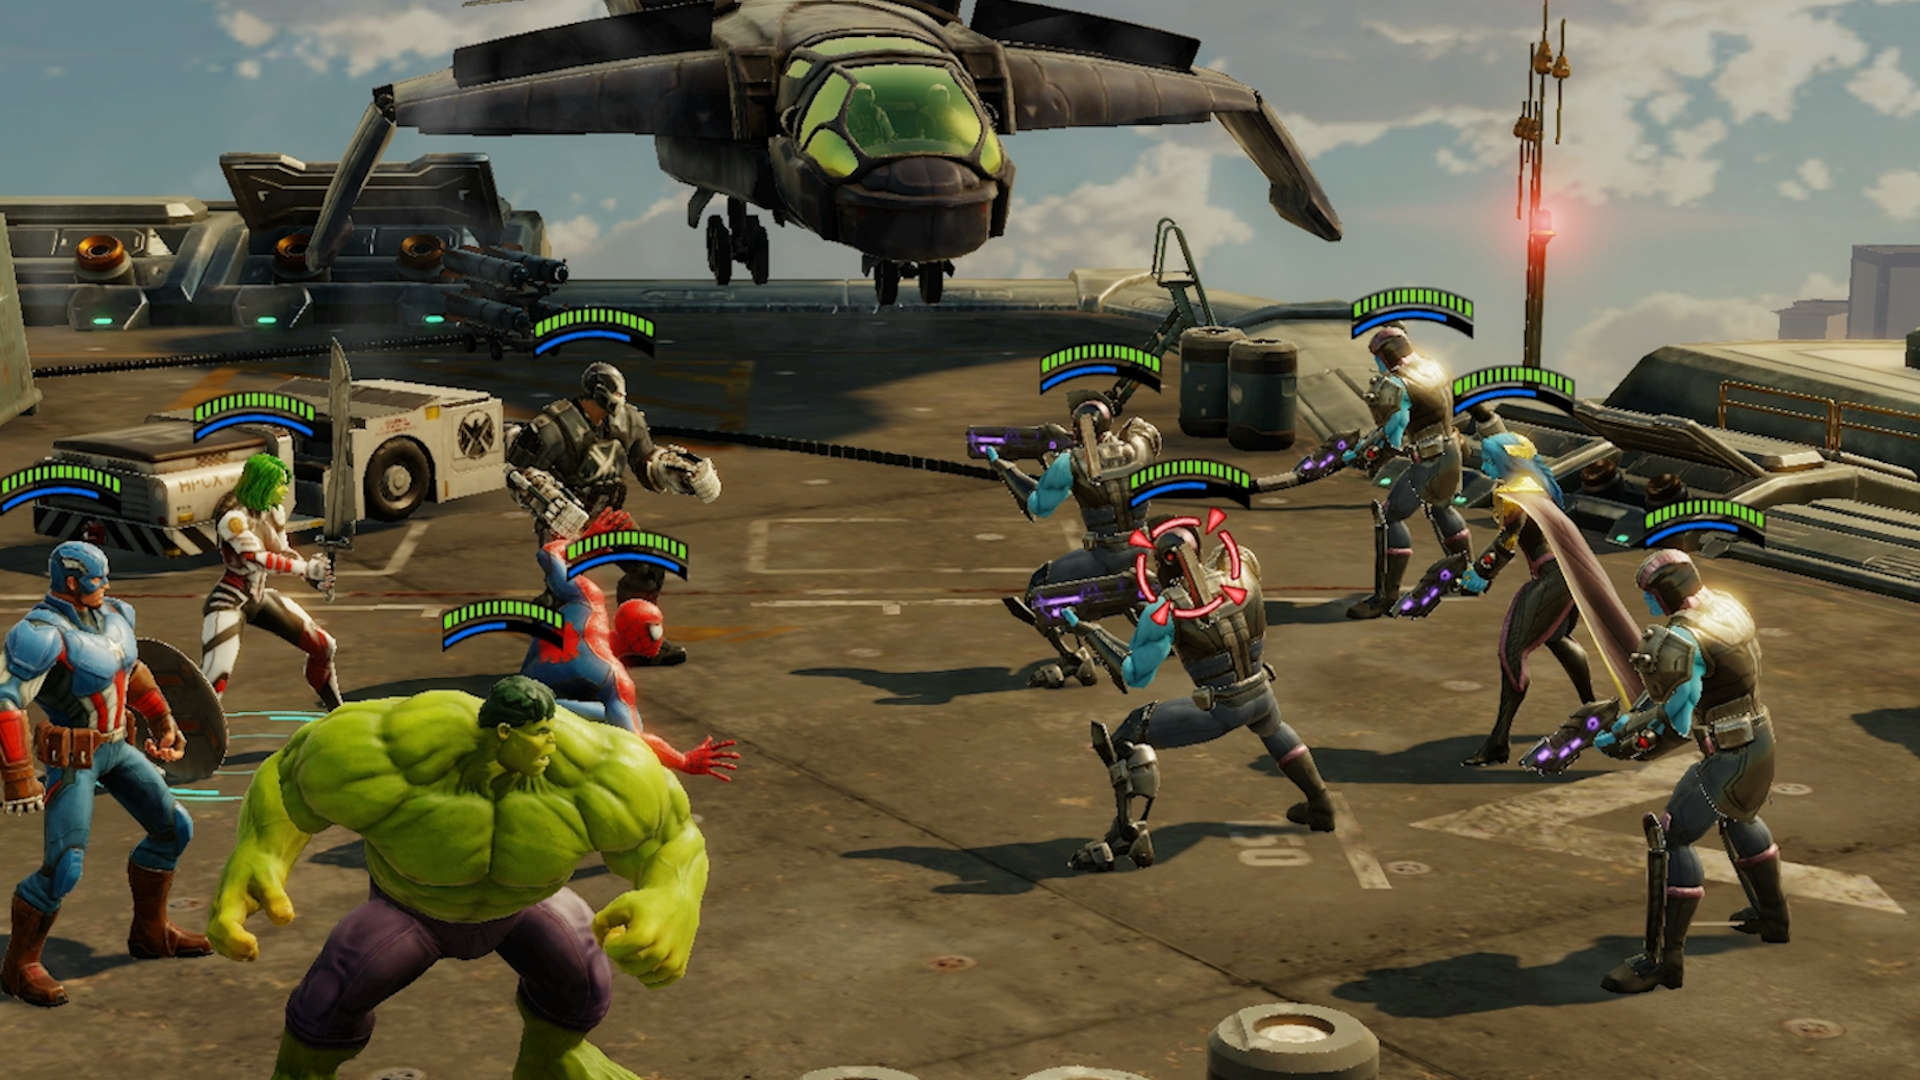 เกม Gacha ที่ดีที่สุด: Marvel Strike Force ภาพแสดงกลุ่มของตัวละคร Marvel ในการต่อสู้รวมถึง Captain America และ The Incredible Hulk